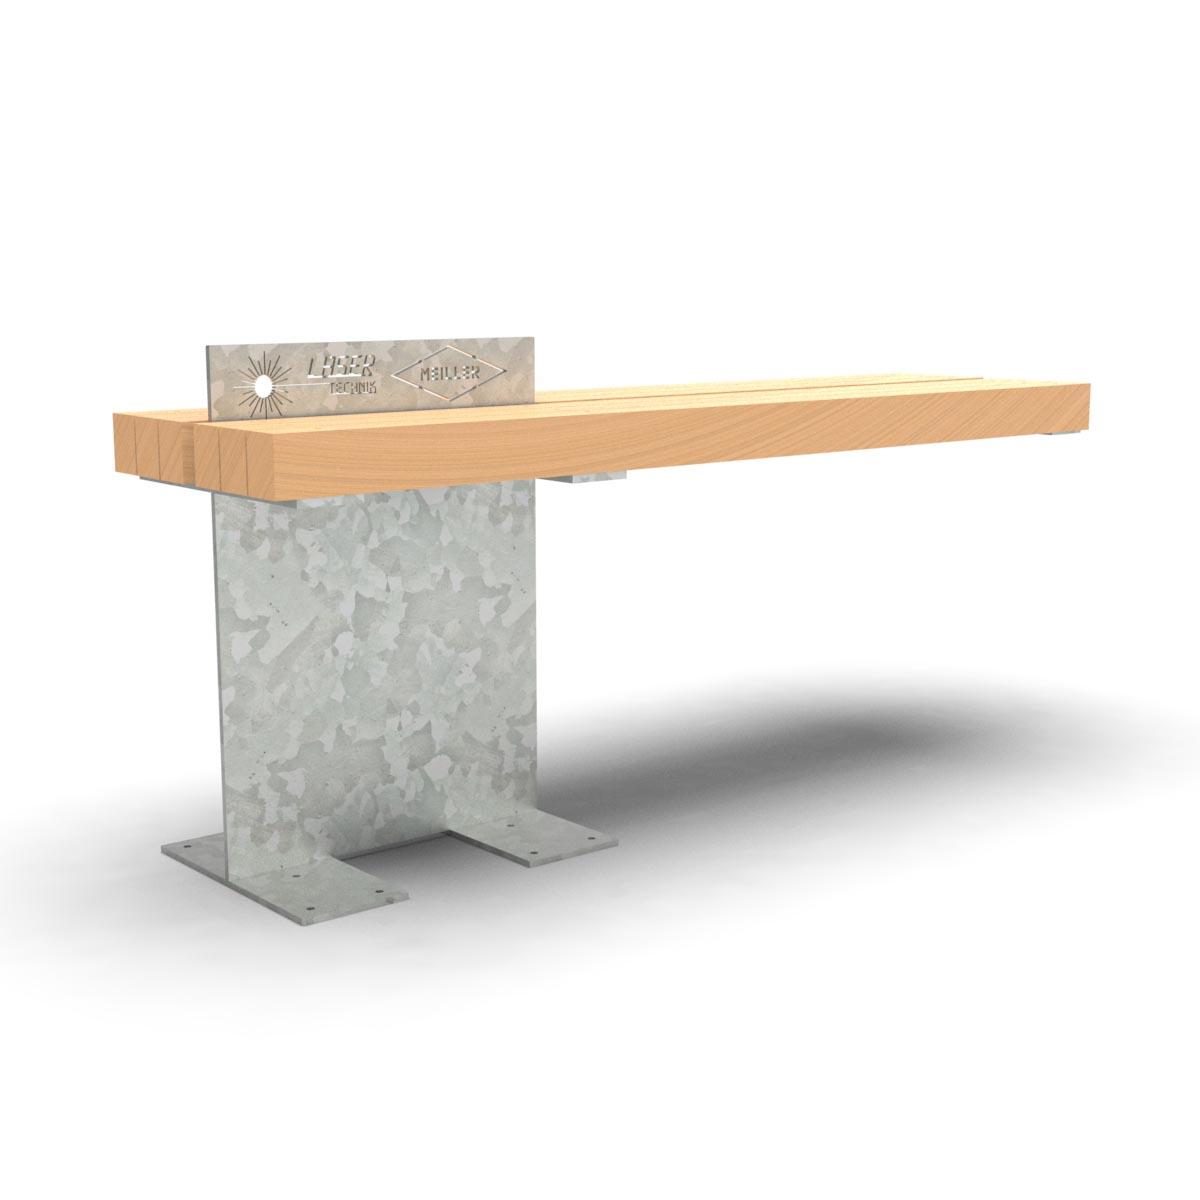 FOREST Tisch aus Metall mit Holzauflagen